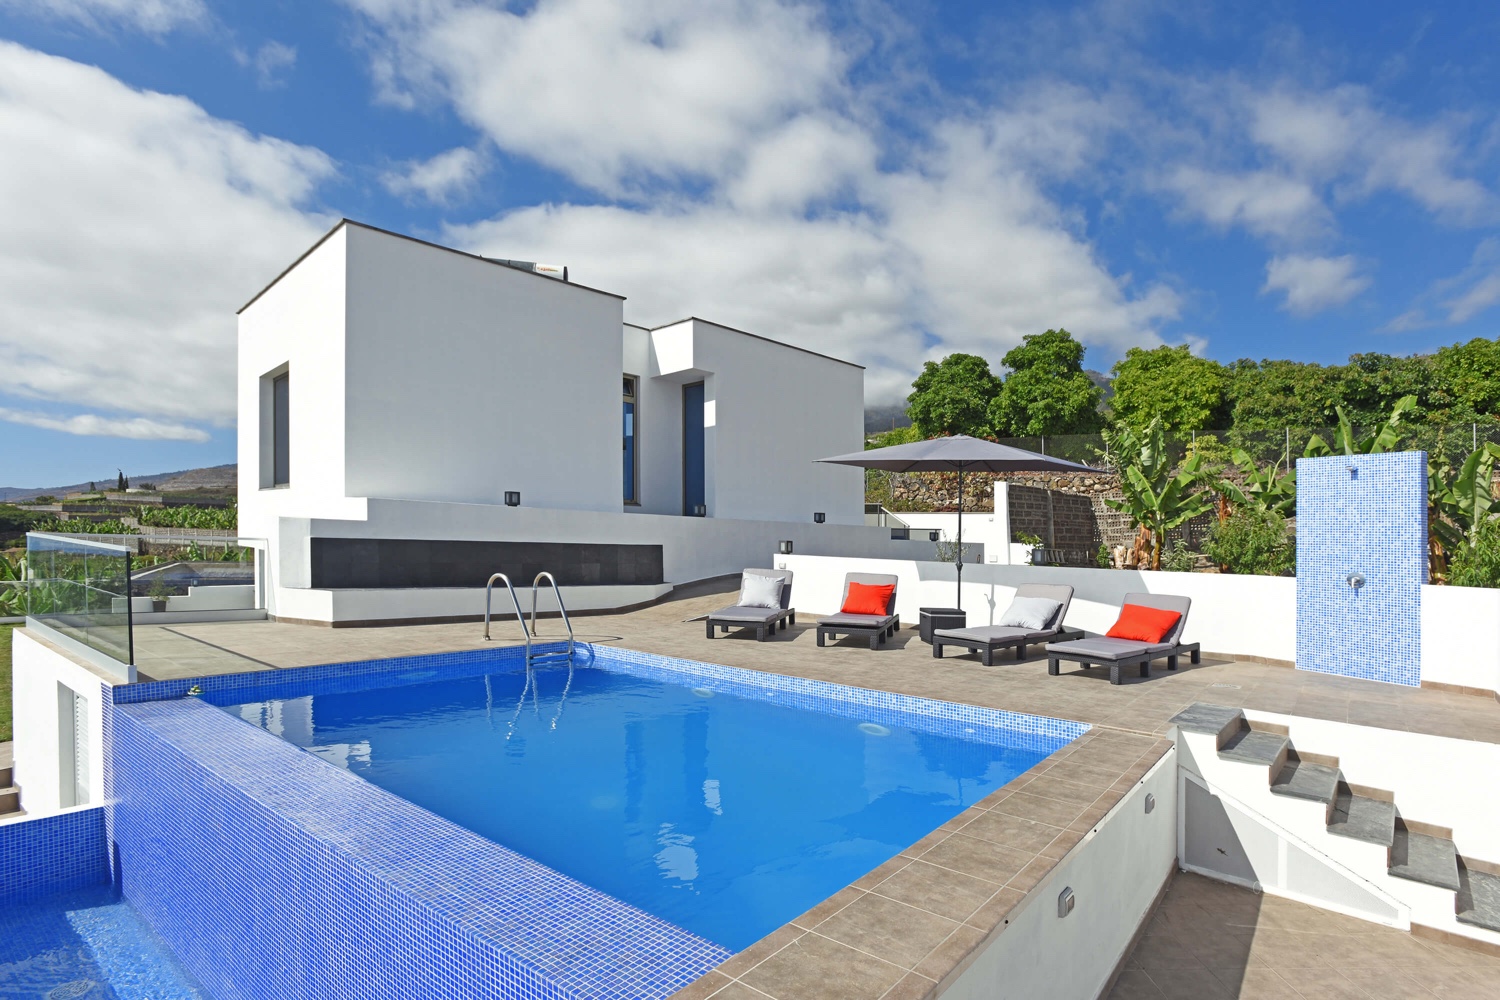 Moderne feriehus med utstyr av høy kvalitet og oppvarmet privat basseng på øya La Palma